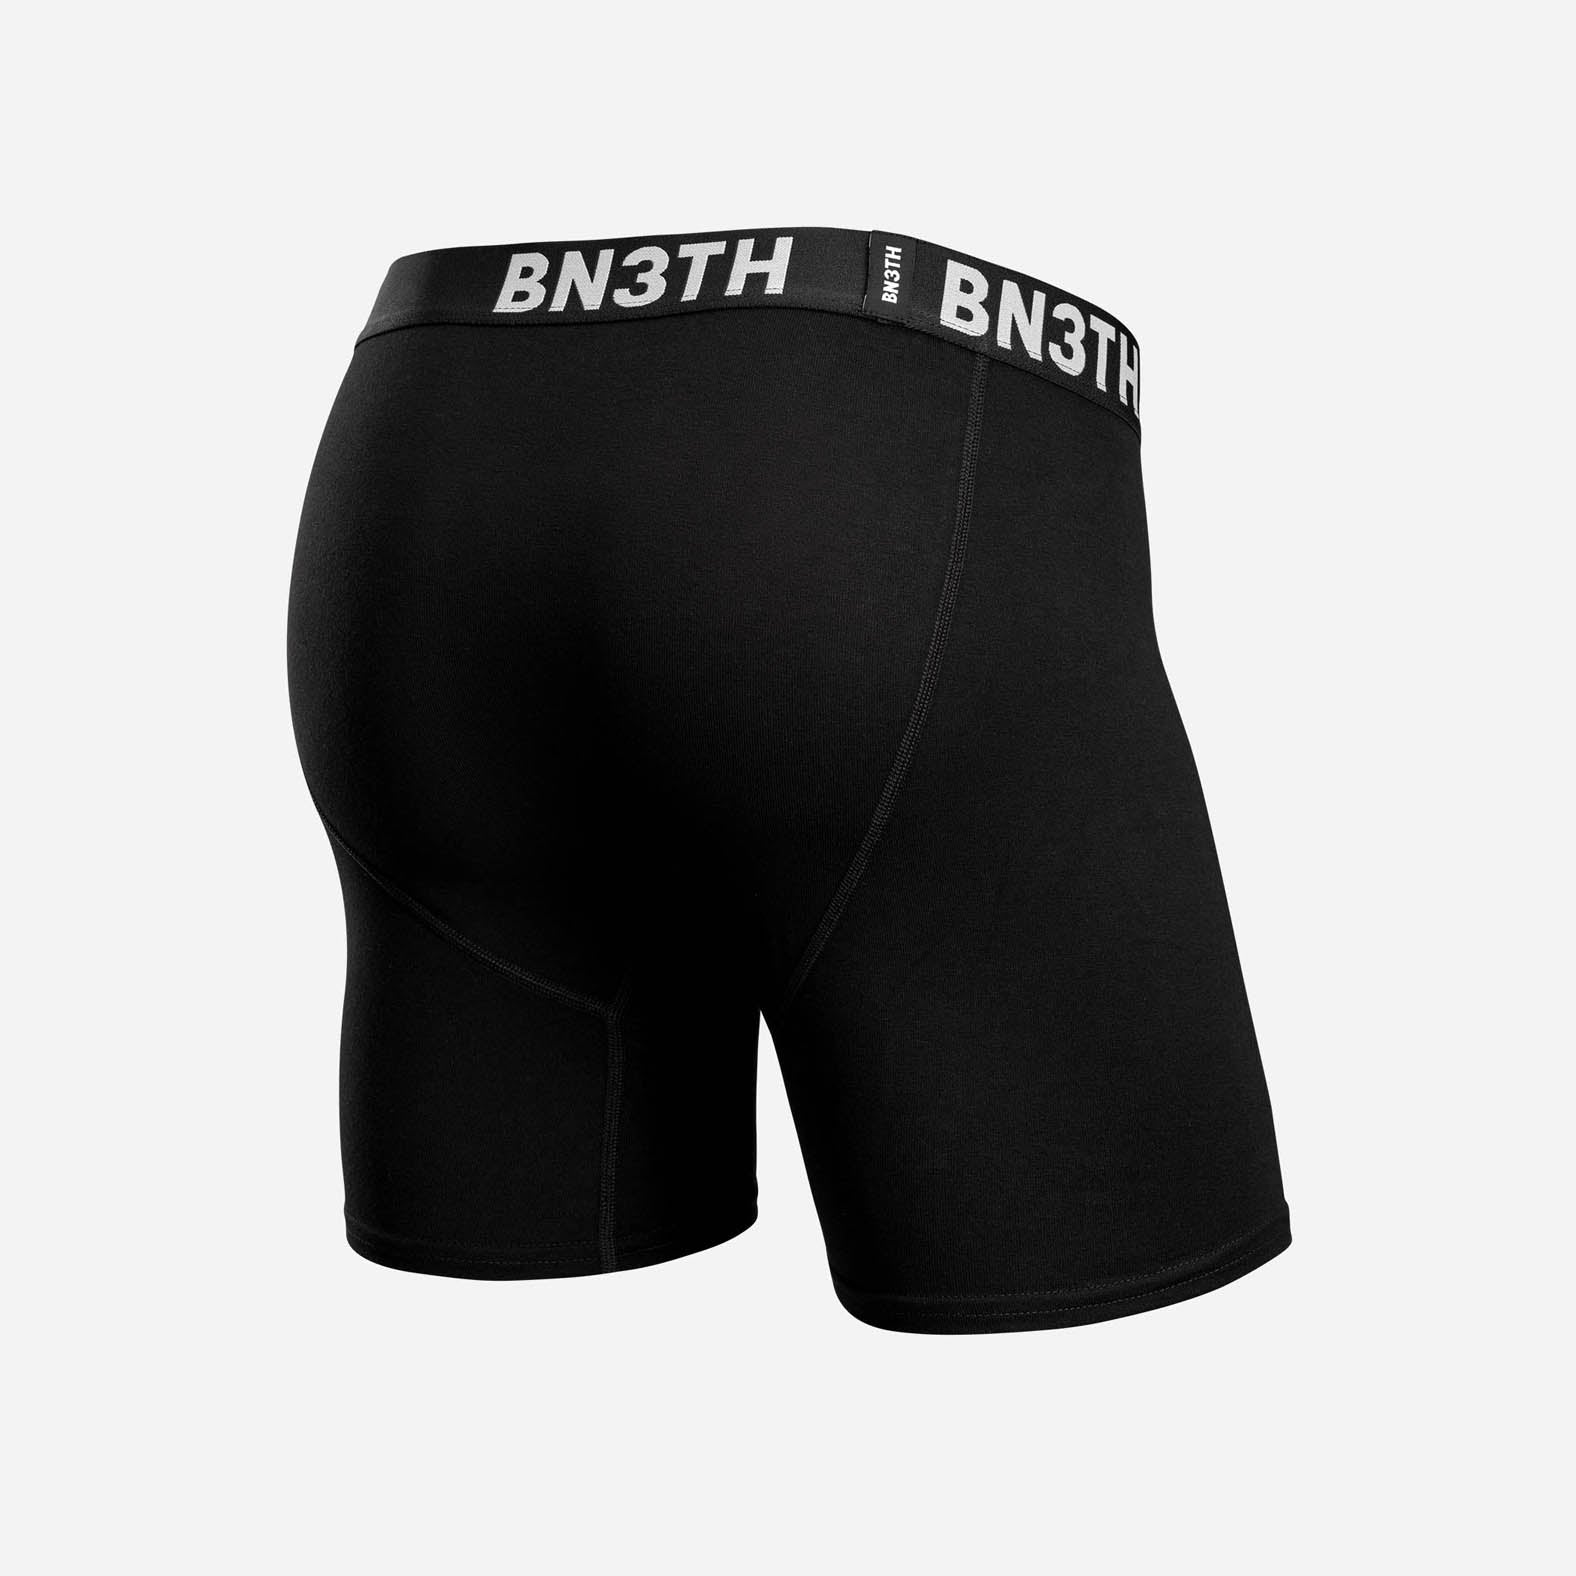 BN3TH Men's Pro XT2 Boxer Brief (Black/White, X-Small) 